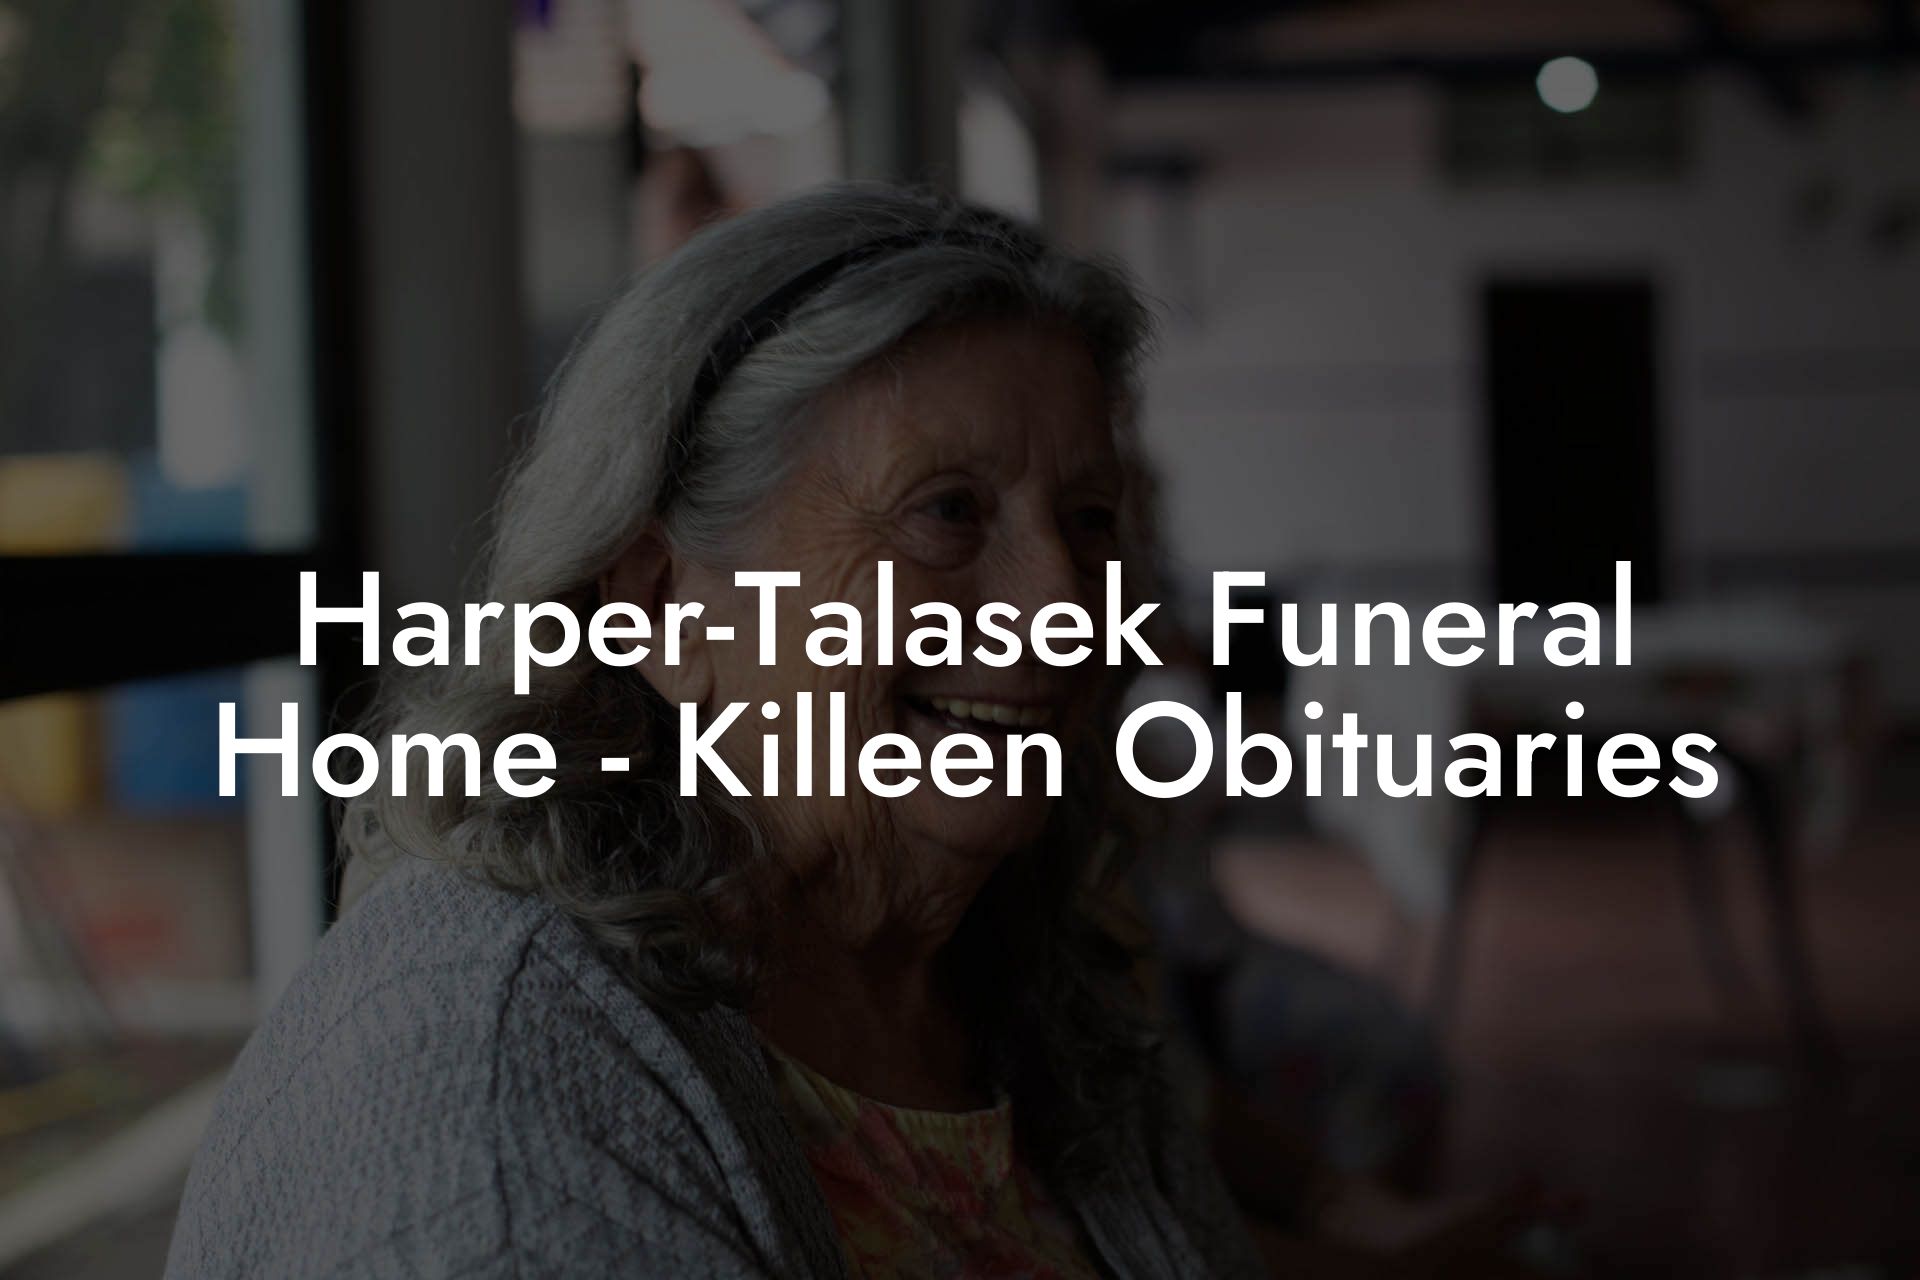 Harper-Talasek Funeral Home - Killeen Obituaries